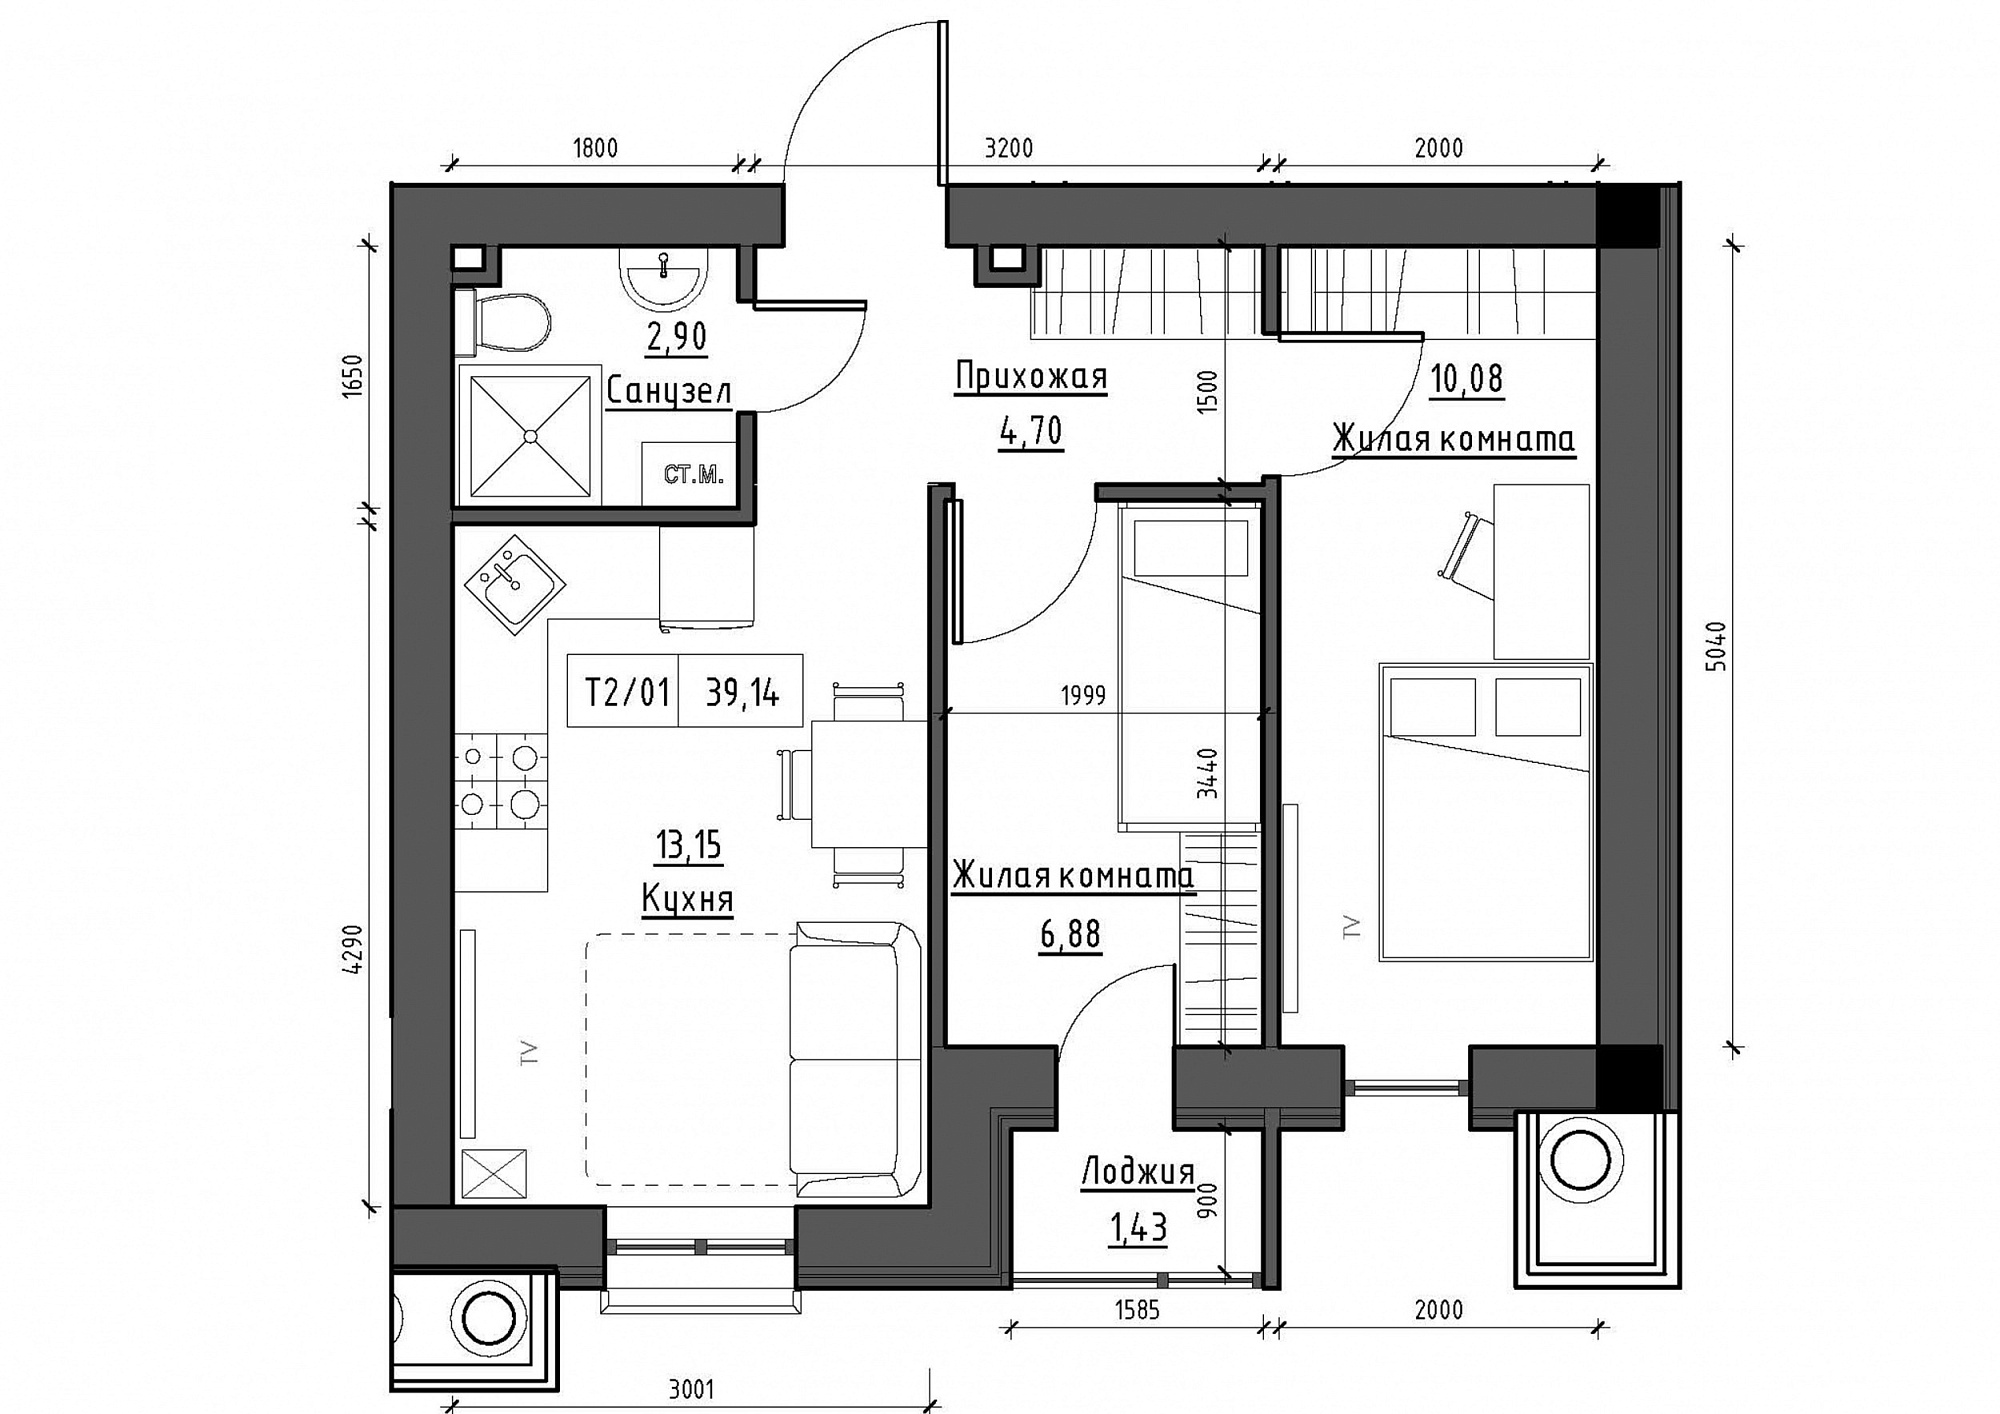 Планування 2-к квартира площею 39.14м2, KS-012-01/0005.